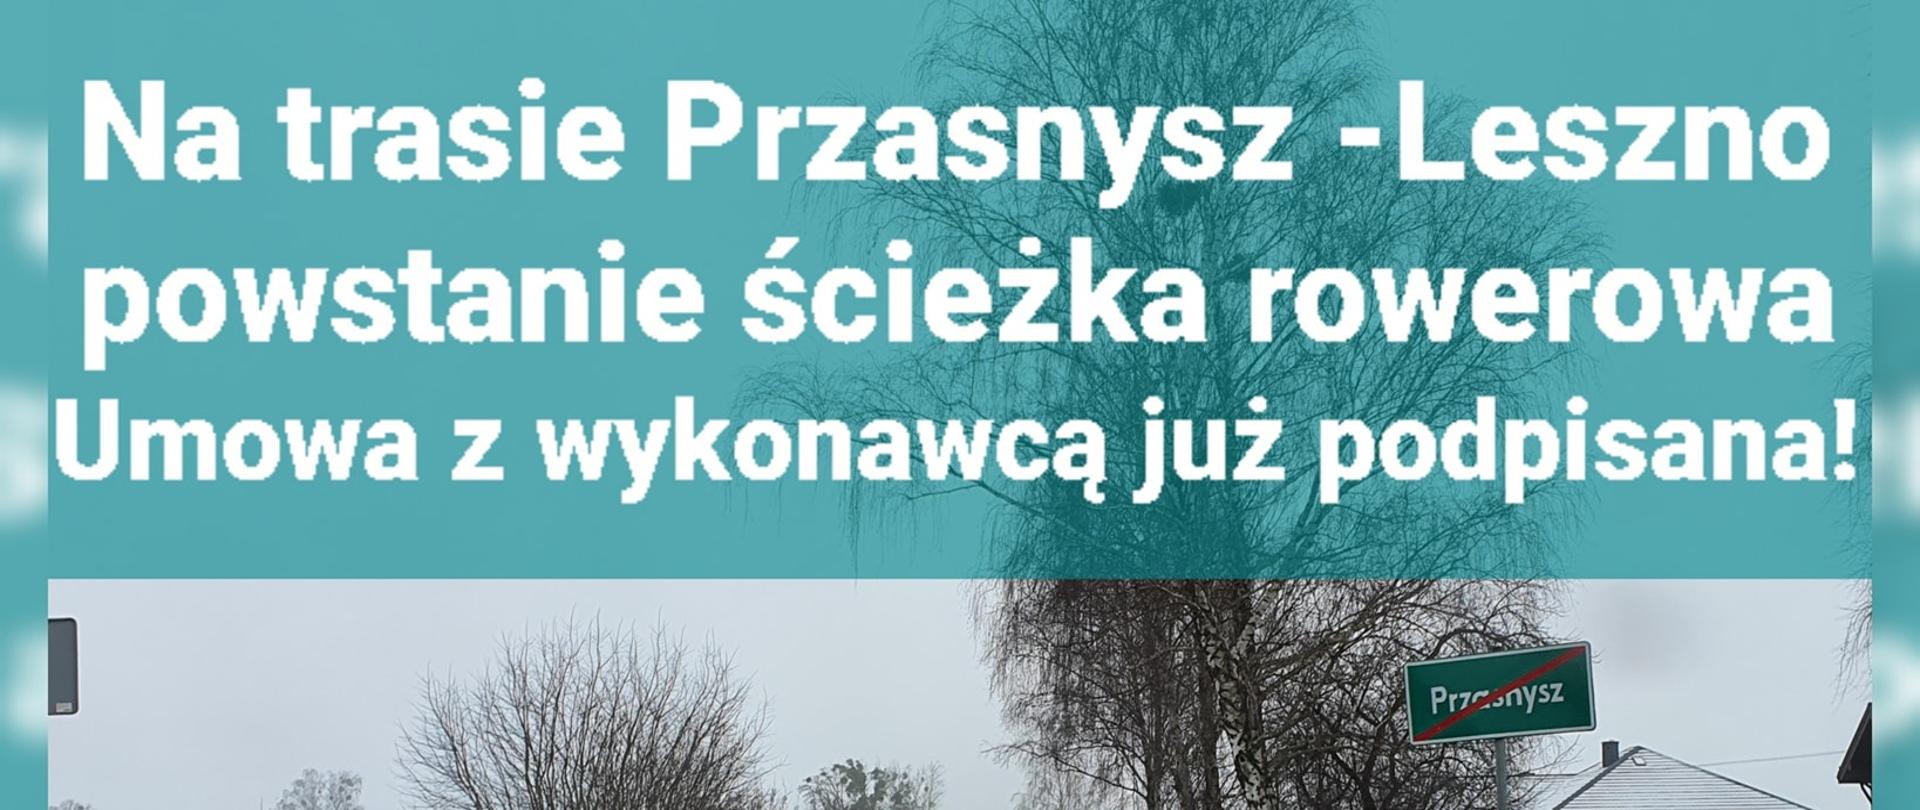 Grafika promująca informację o podpisaniu umowy na wykonanie ścieżki rowerowej na trasie Przasnysz - Leszno za trzy miliony sześćset tysięcy złotych w terminie do października 2022 roku.